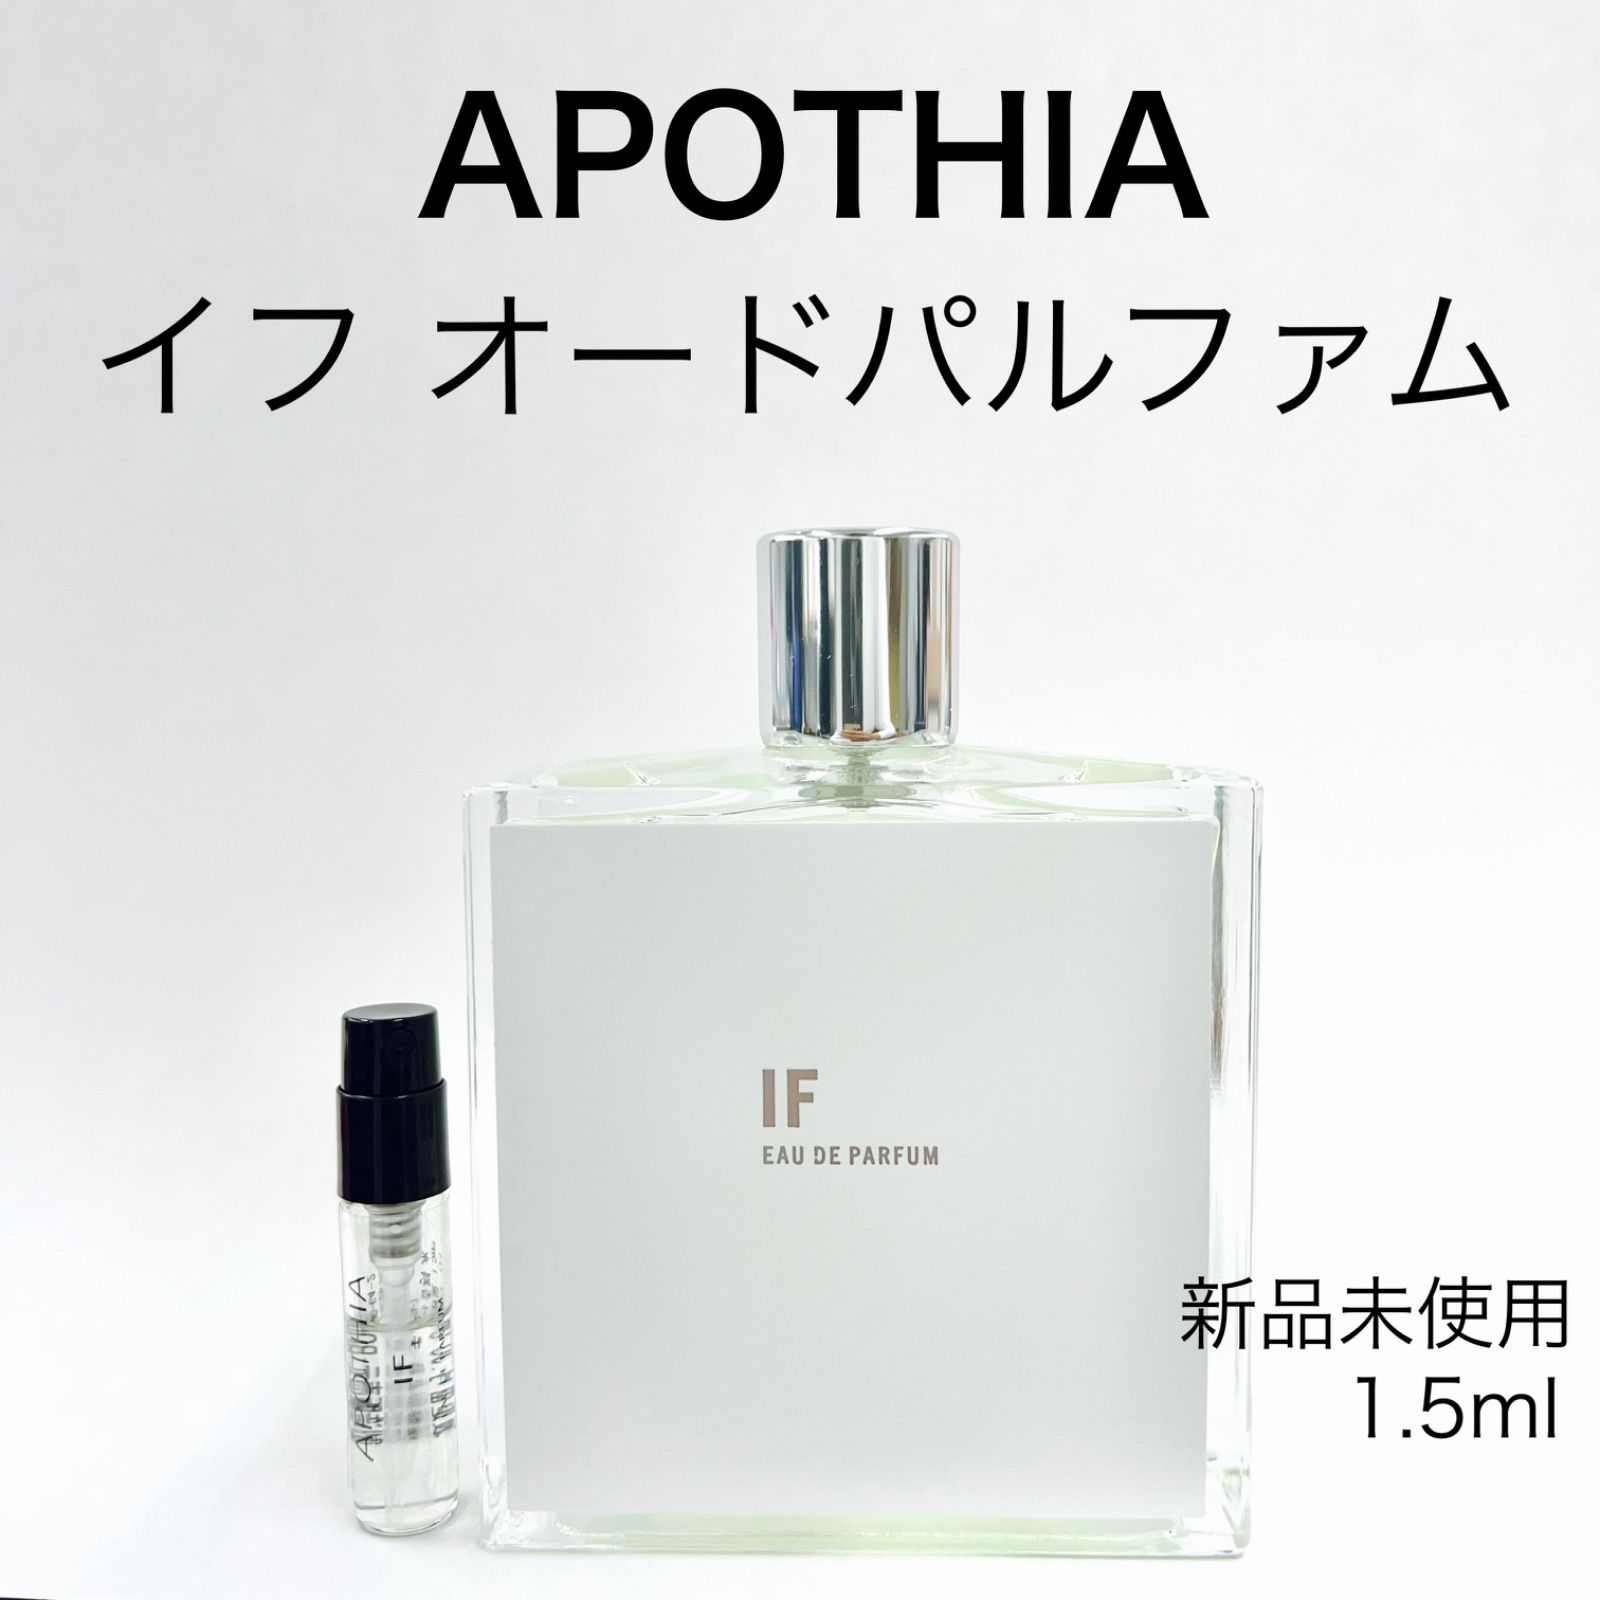 メルフレグランス】AROTHIA アポーシア ifイフ 香水 1.5ml - メルカリ